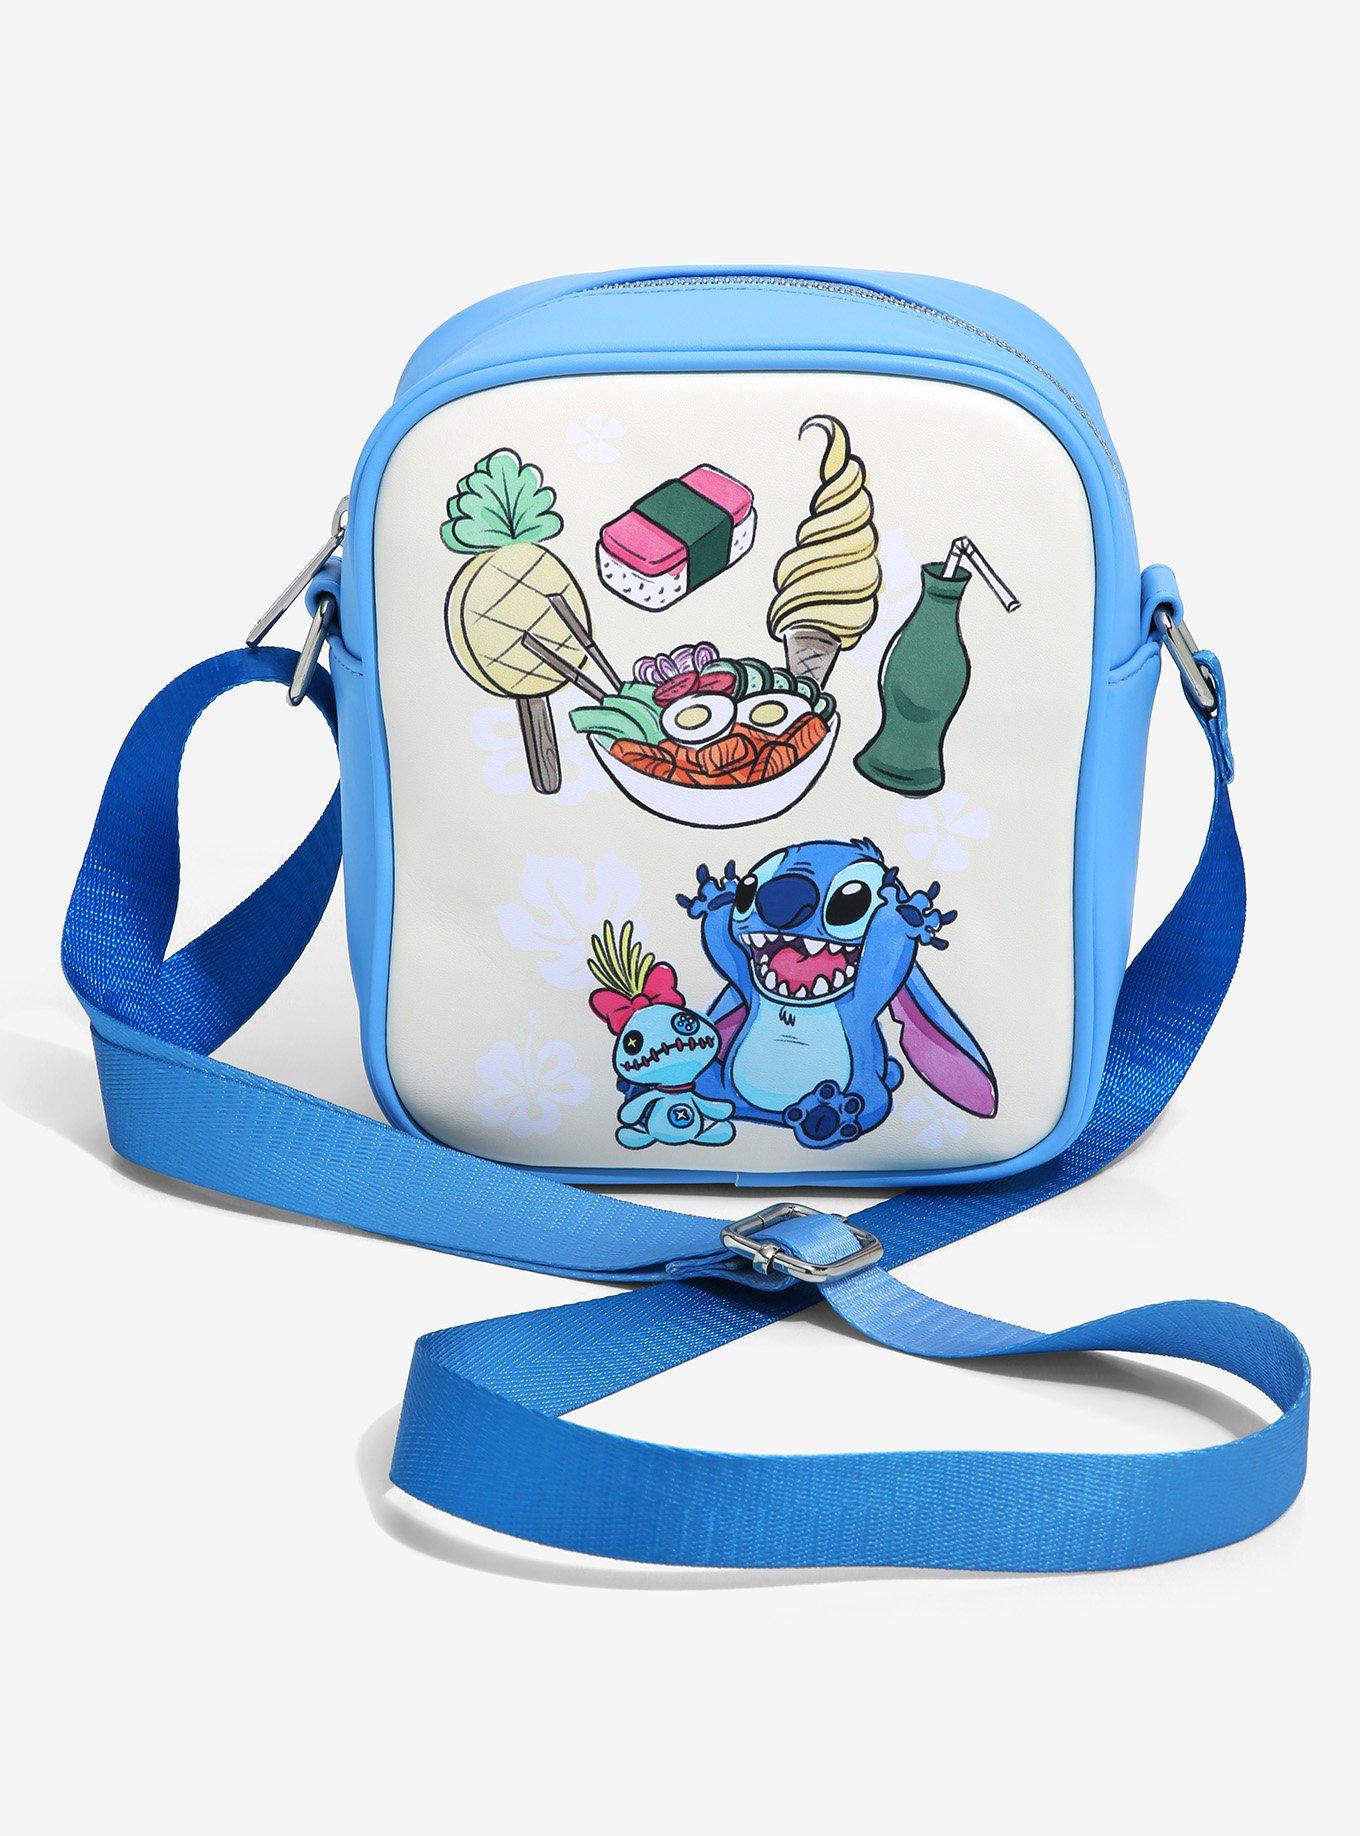 Stitch Crossbody Bag by Loungefly | shopDisney